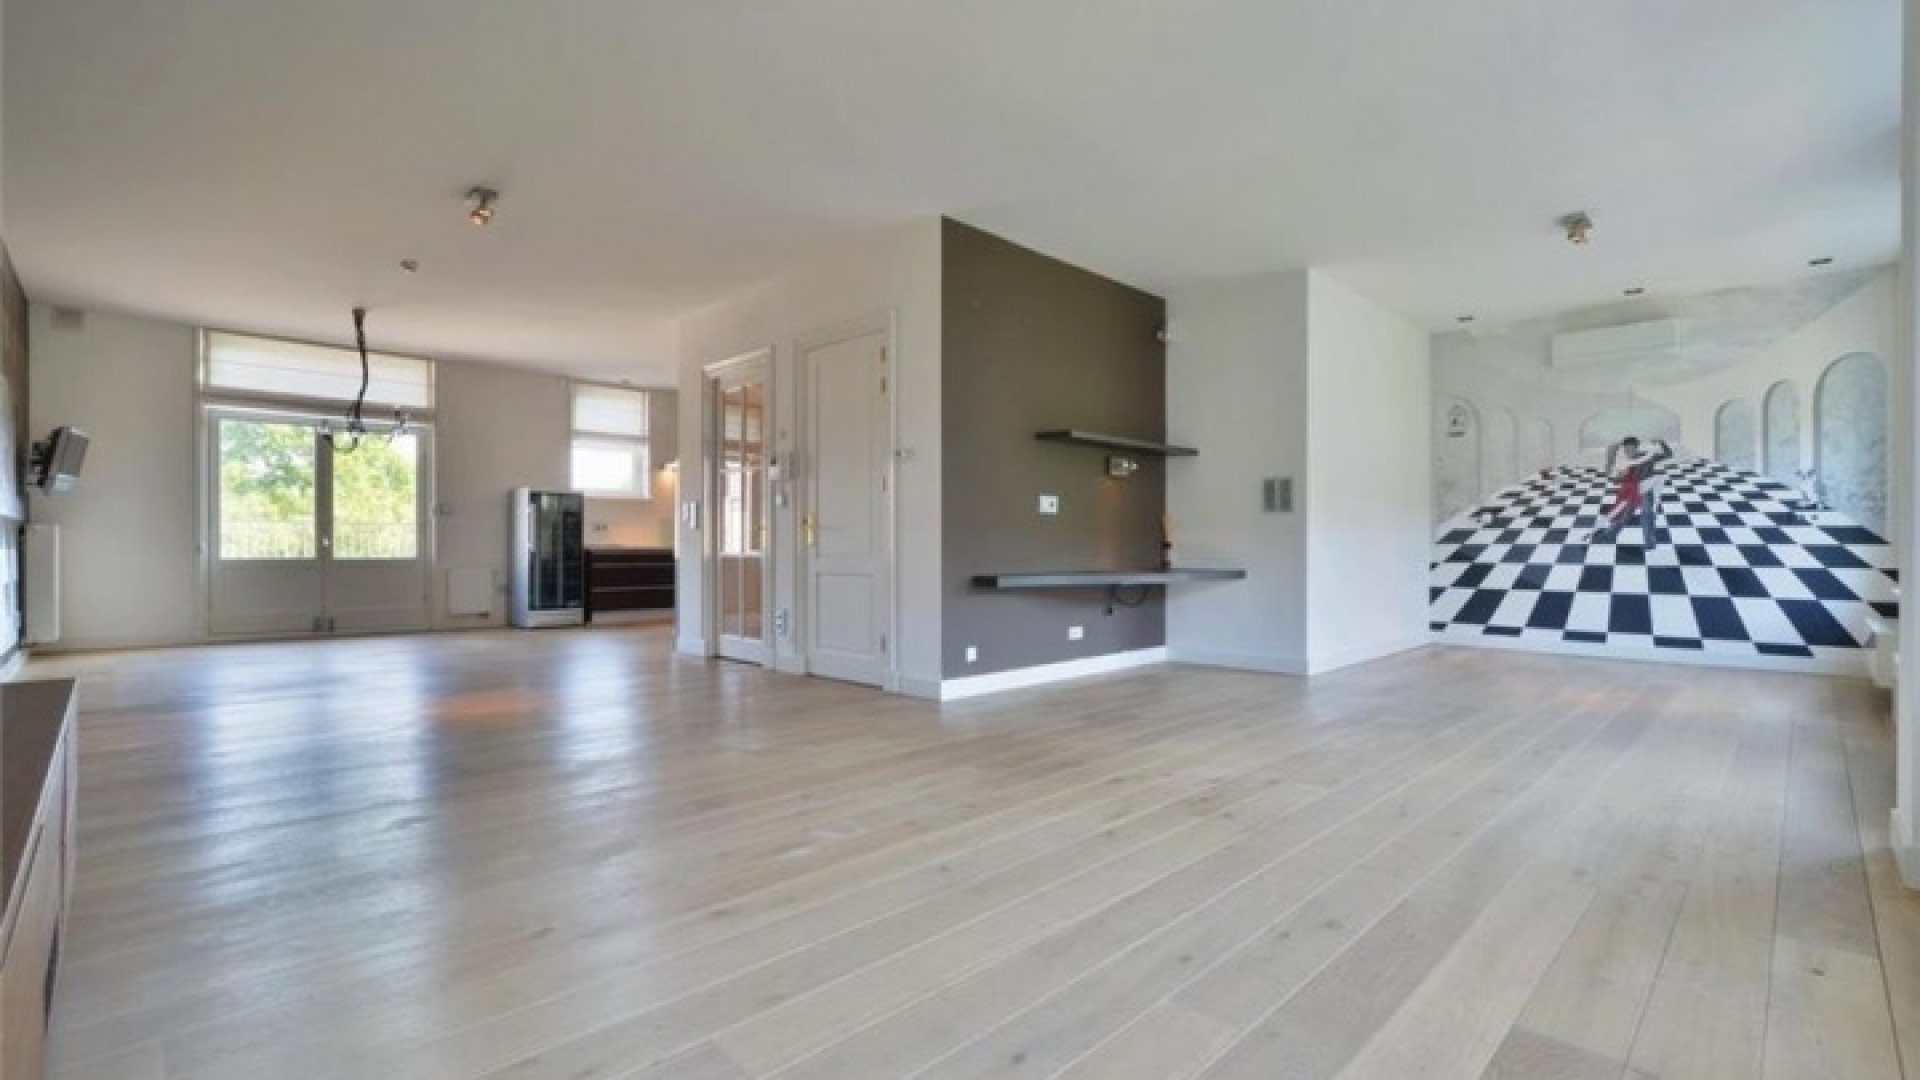 Frank Rijkaard zoekt huurder voor zijn luxe dubbele bovenhuis. Zie foto's 7